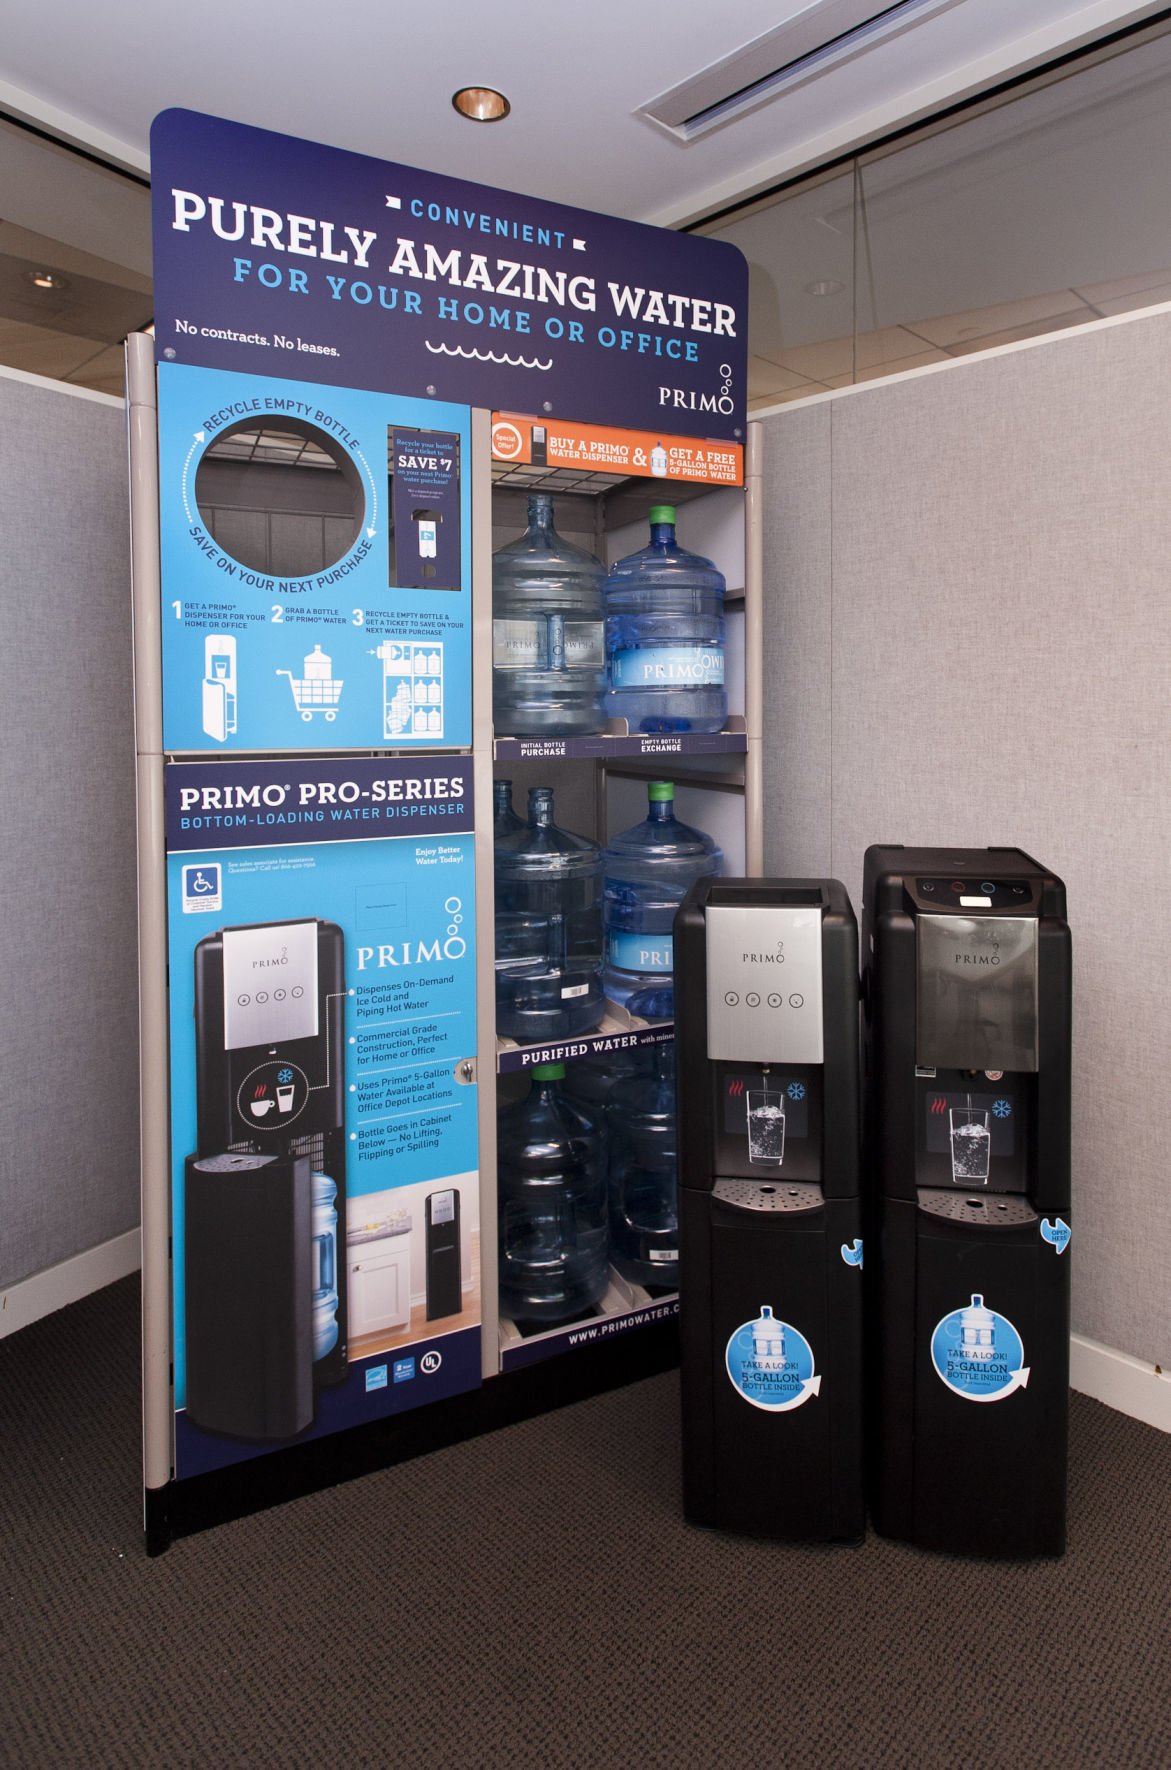 primo water dispenser not dispensing water